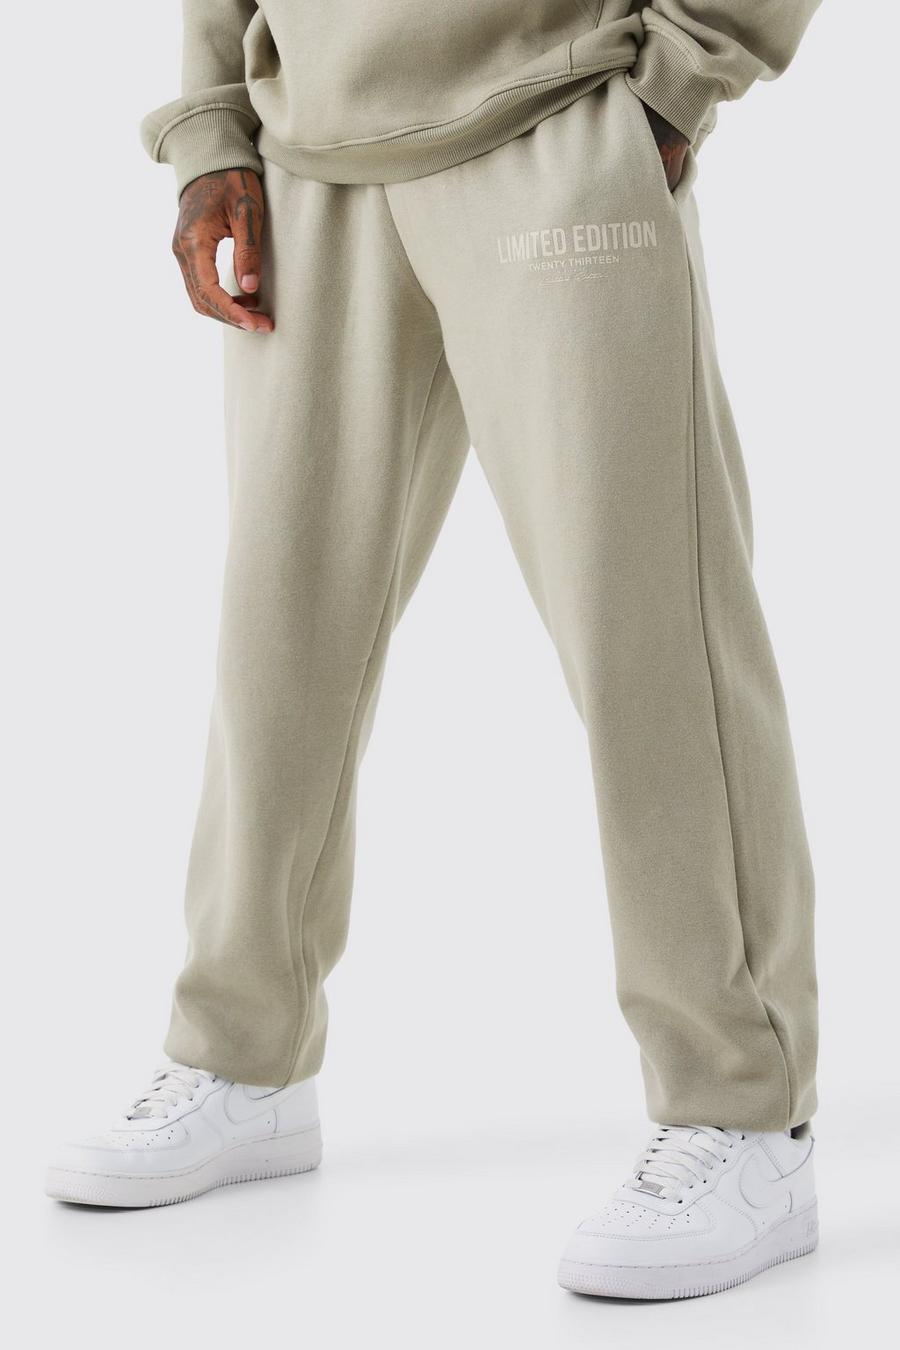 Pantaloni tuta oversize Limited Edition con stampa di testo, Stone